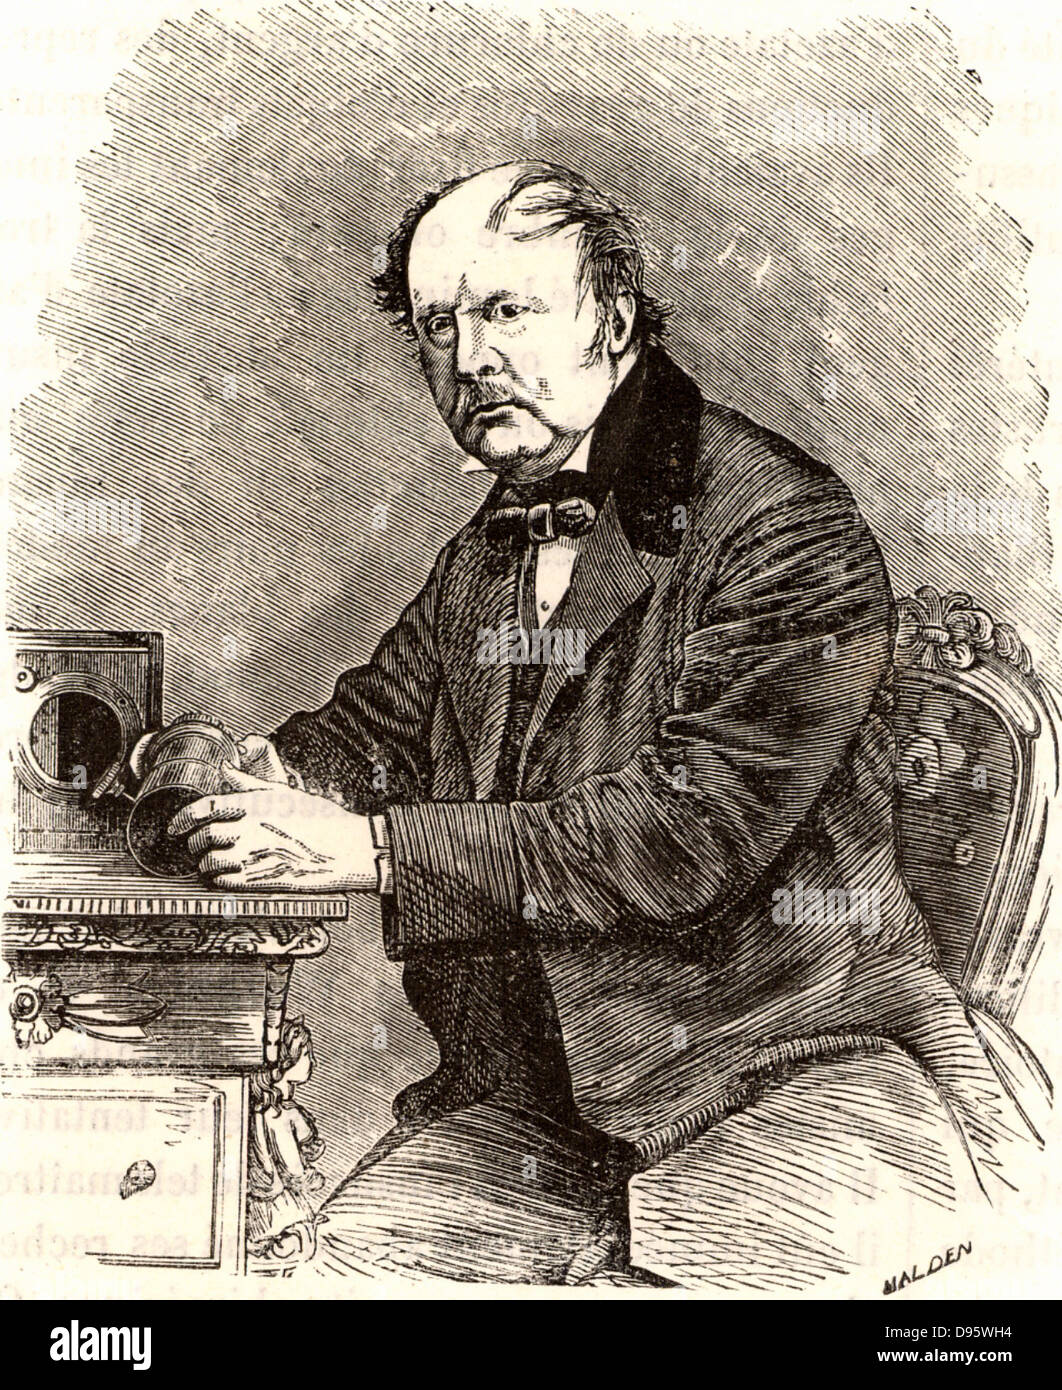 William Henry Fox Talbot (1800-1877) de l'abbaye de Lacock, Wiltshire. Physicien et mathématicien anglais, pionnier dans le domaine de la photographie. En 1841, il a breveté le calotype processus qui produit un négatif depuis plusieurs exemplaires qui pourraient être réalisés. Il est l'un des premiers à déchiffrer les inscriptions cunéiformes de Ninive. Gravure tirée de 'Les merveilles de la Science de Louis FIGUIER (Paris, c1870). Banque D'Images